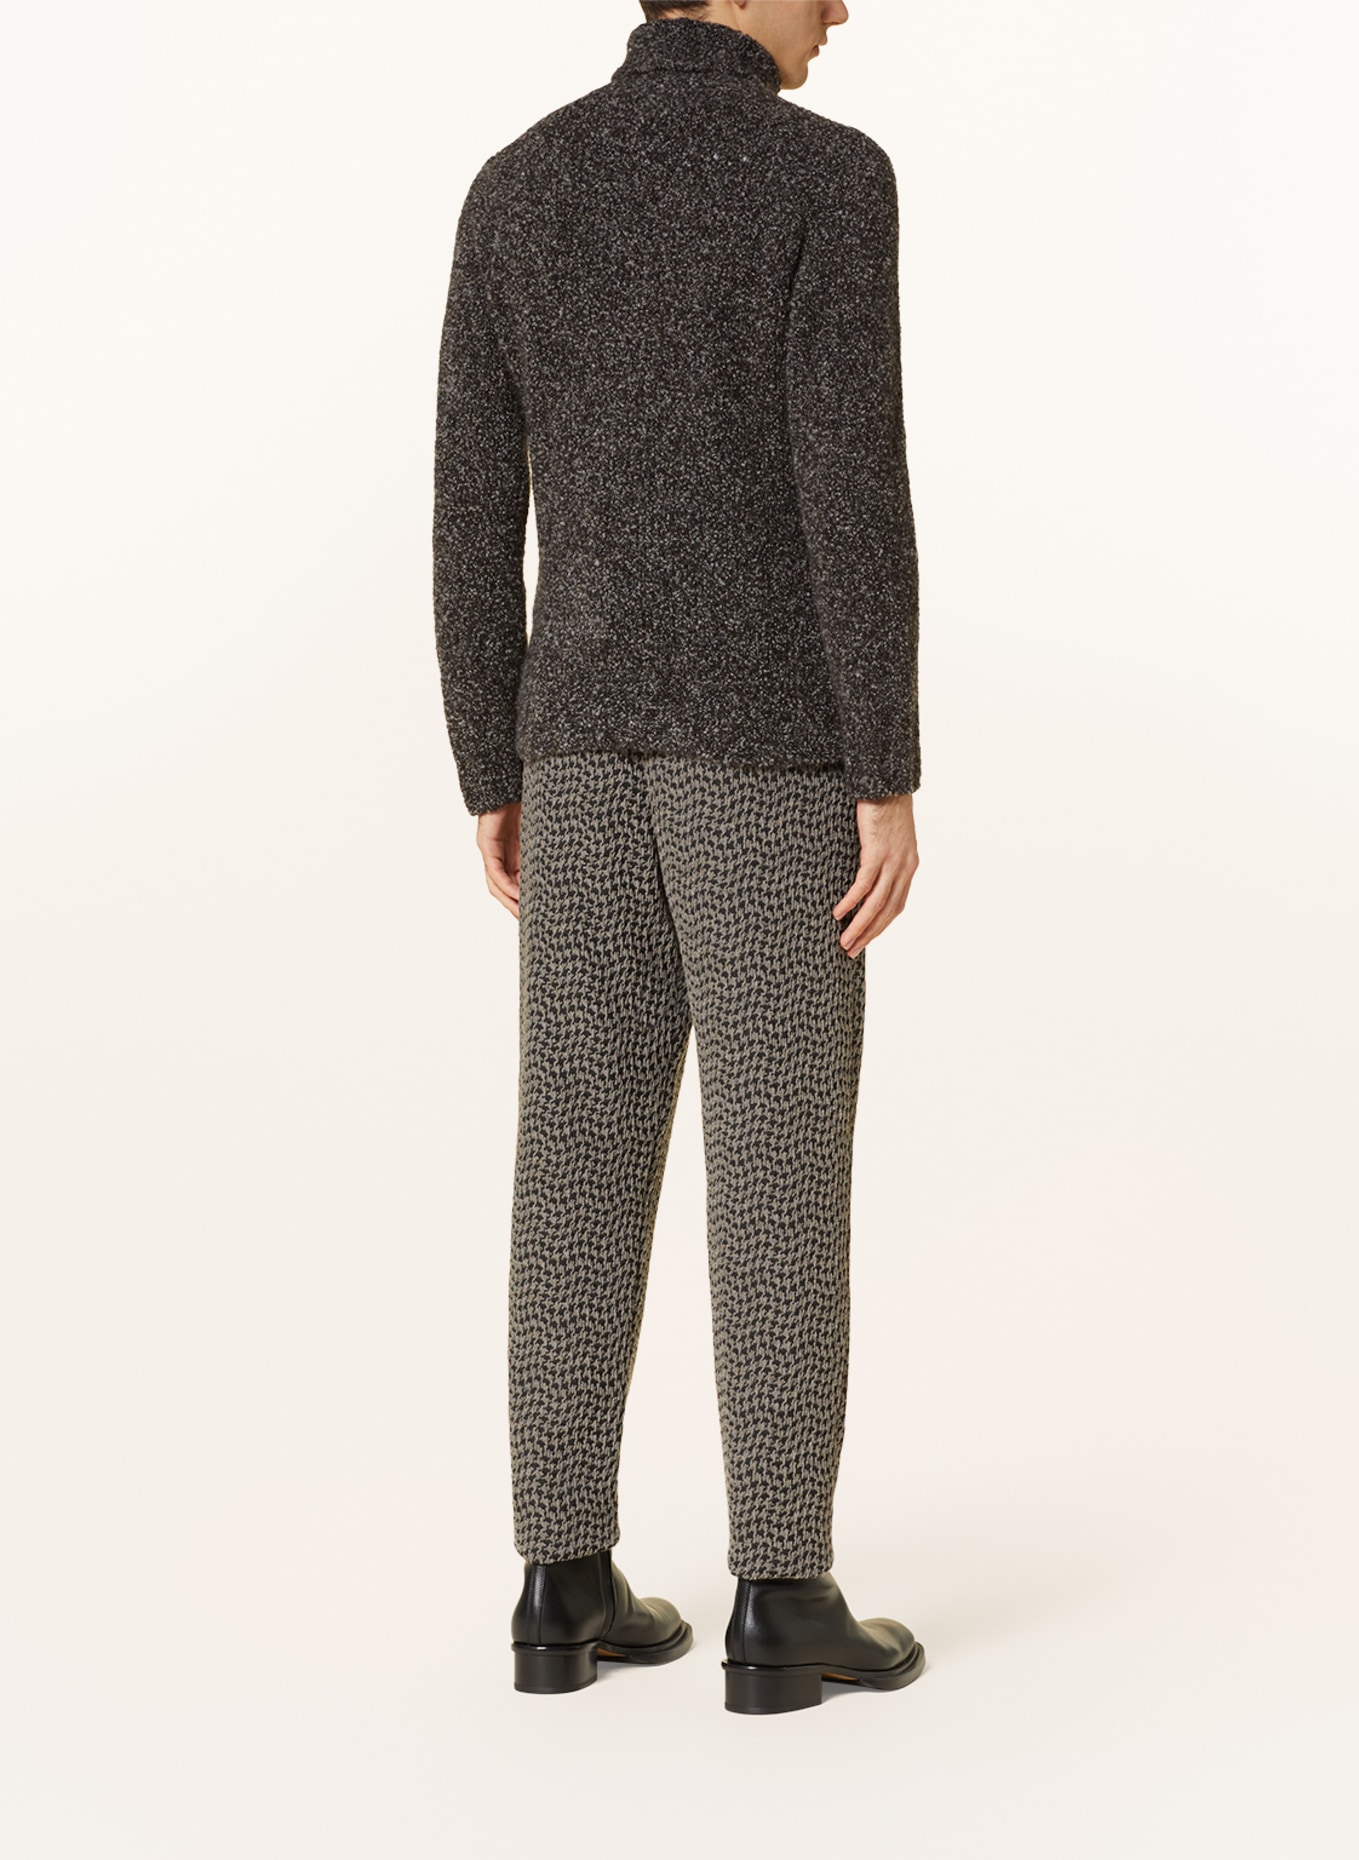 GIORGIO ARMANI Turtleneck sweater in cashmere, Color: BLACK/ WHITE (Image 3)